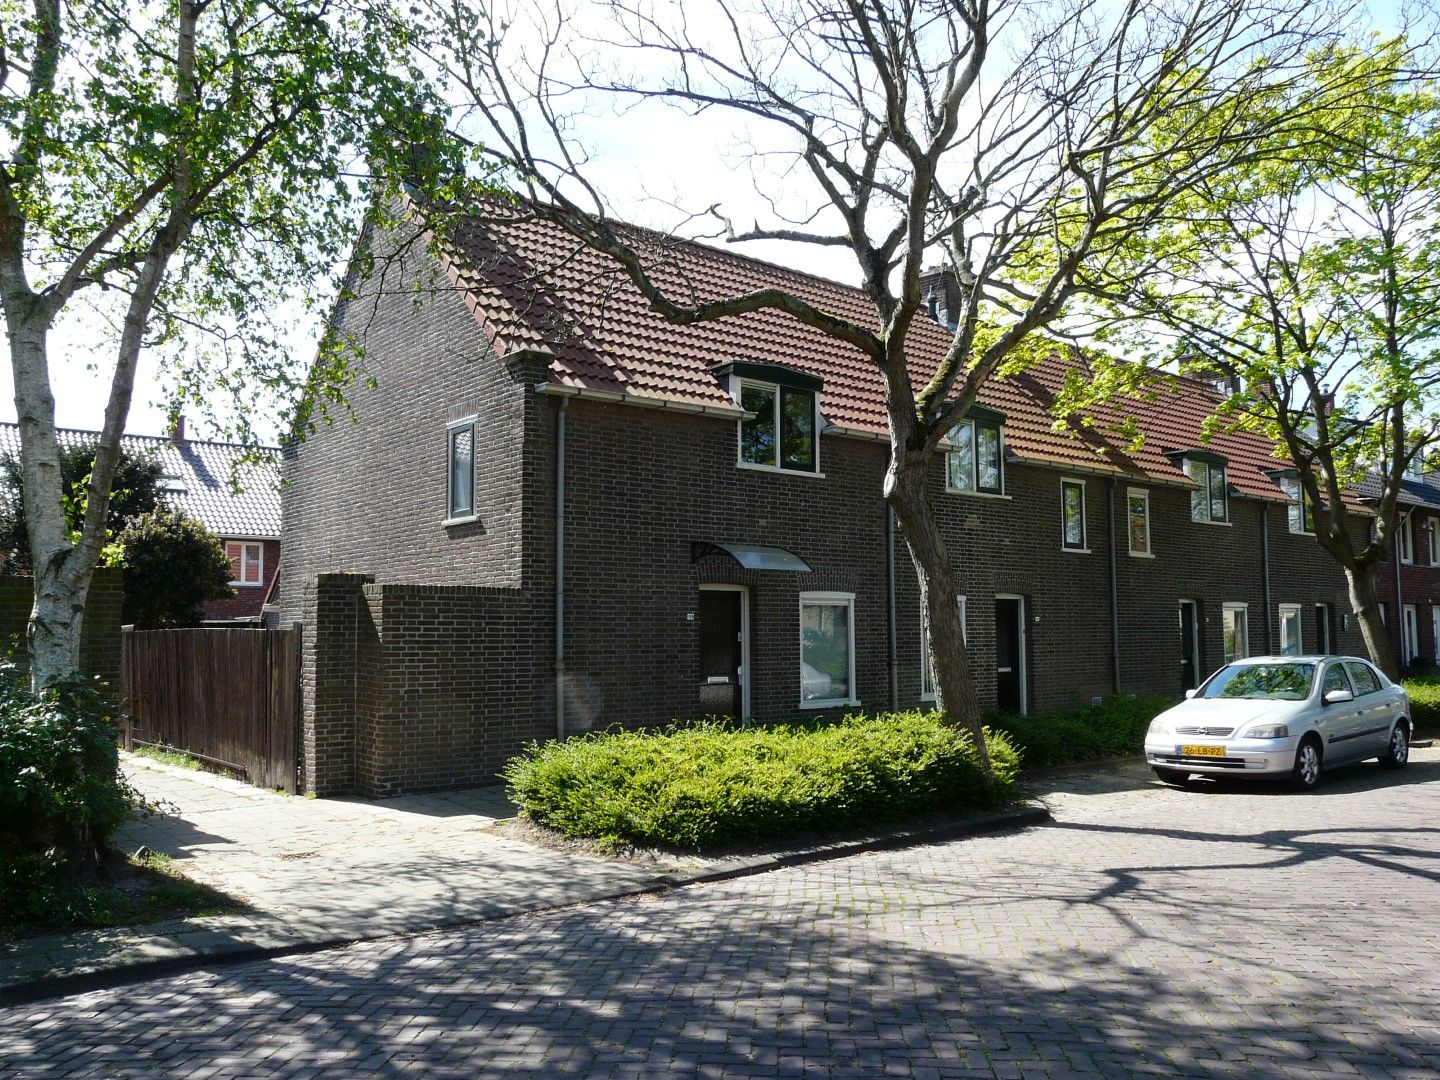 Druivenstraat 127, 2671 SH Naaldwijk, Nederland